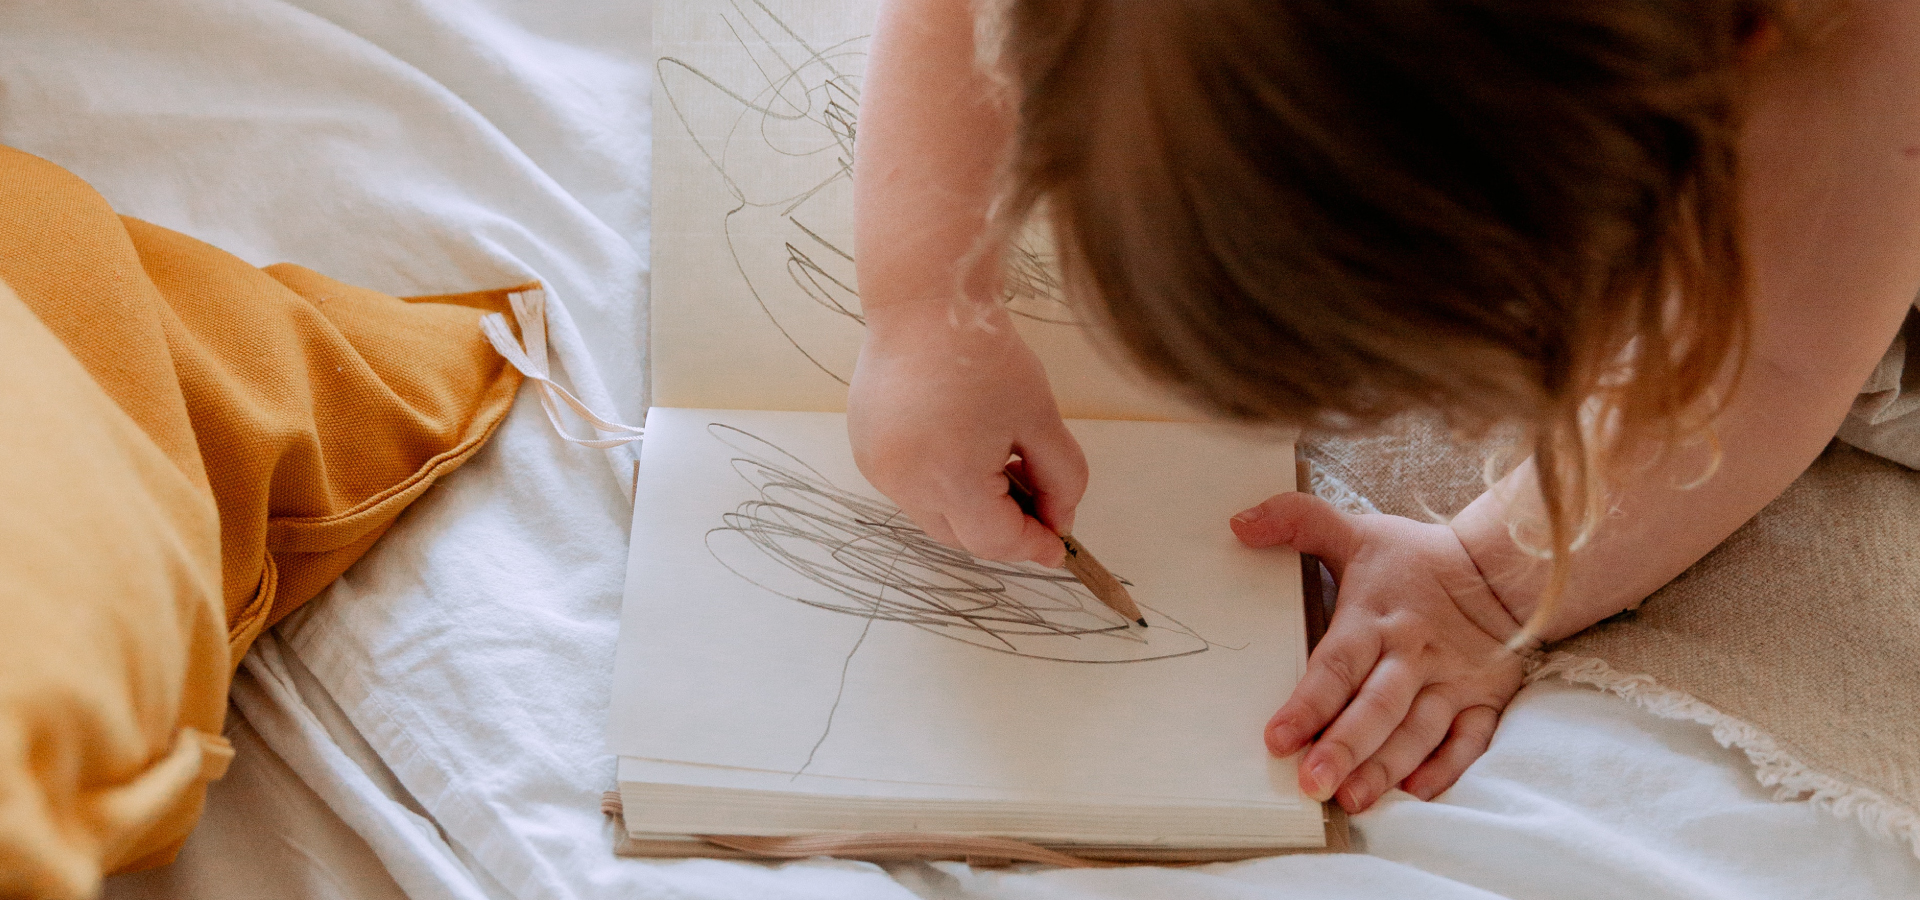 Zbliżenie na ręce dziecka, które rysuje w notatniku leżącym na łóżko. W tle żółta poduszka.